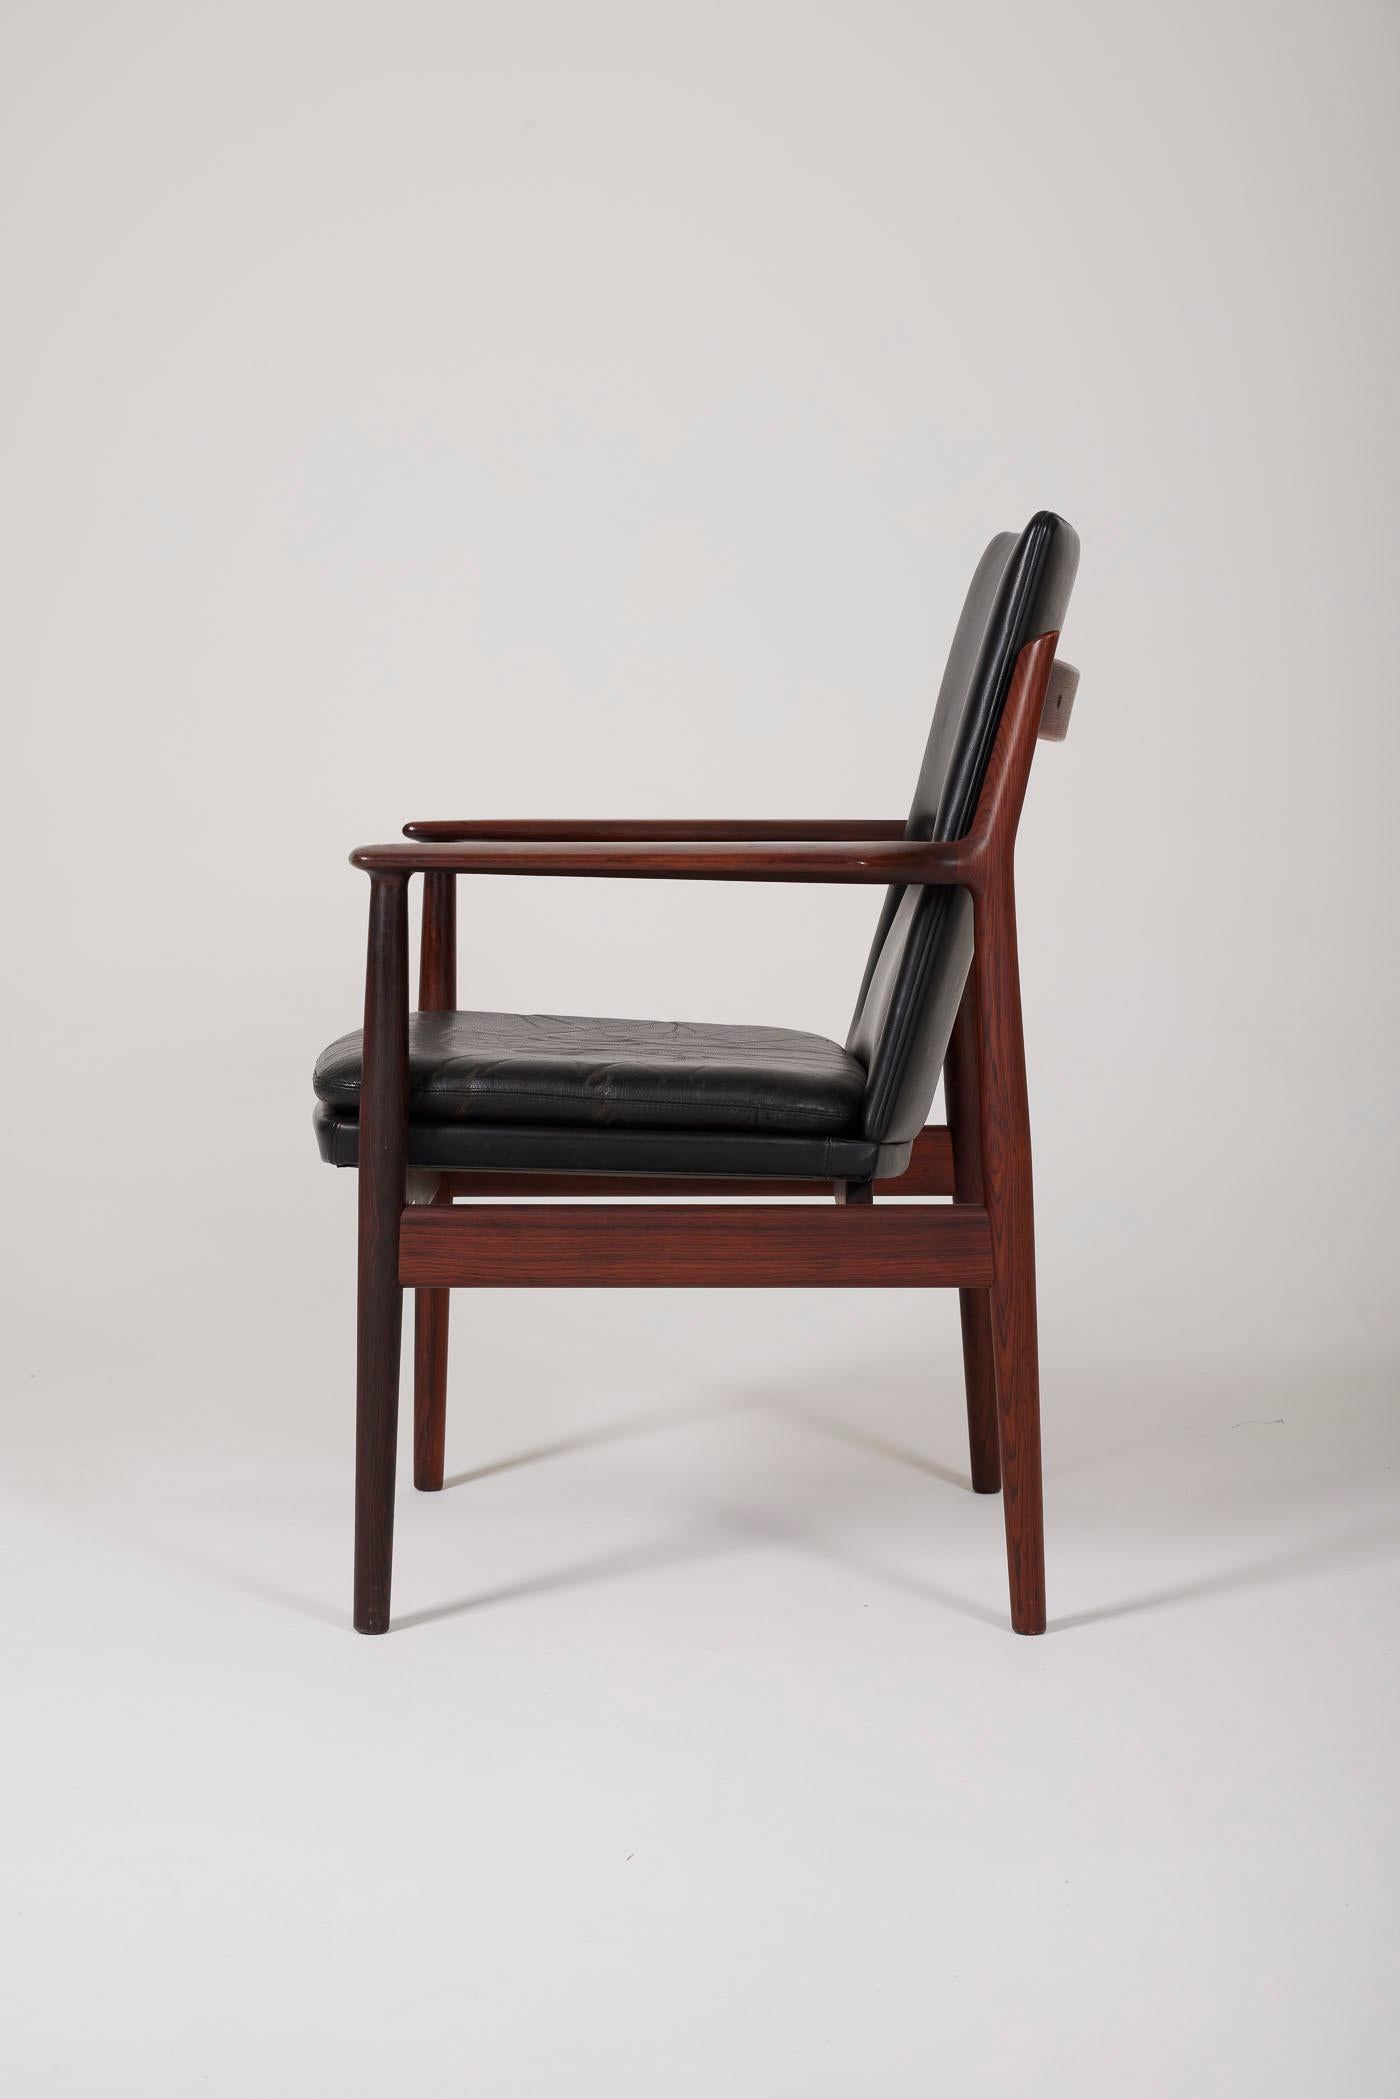 Vintage-Sessel aus dänischem Palisanderholz von Designer Arne Vodder (1926-2009) für Sibast Furniture, 1960er Jahre. Insgesamt sehr guter Zustand.
DV81